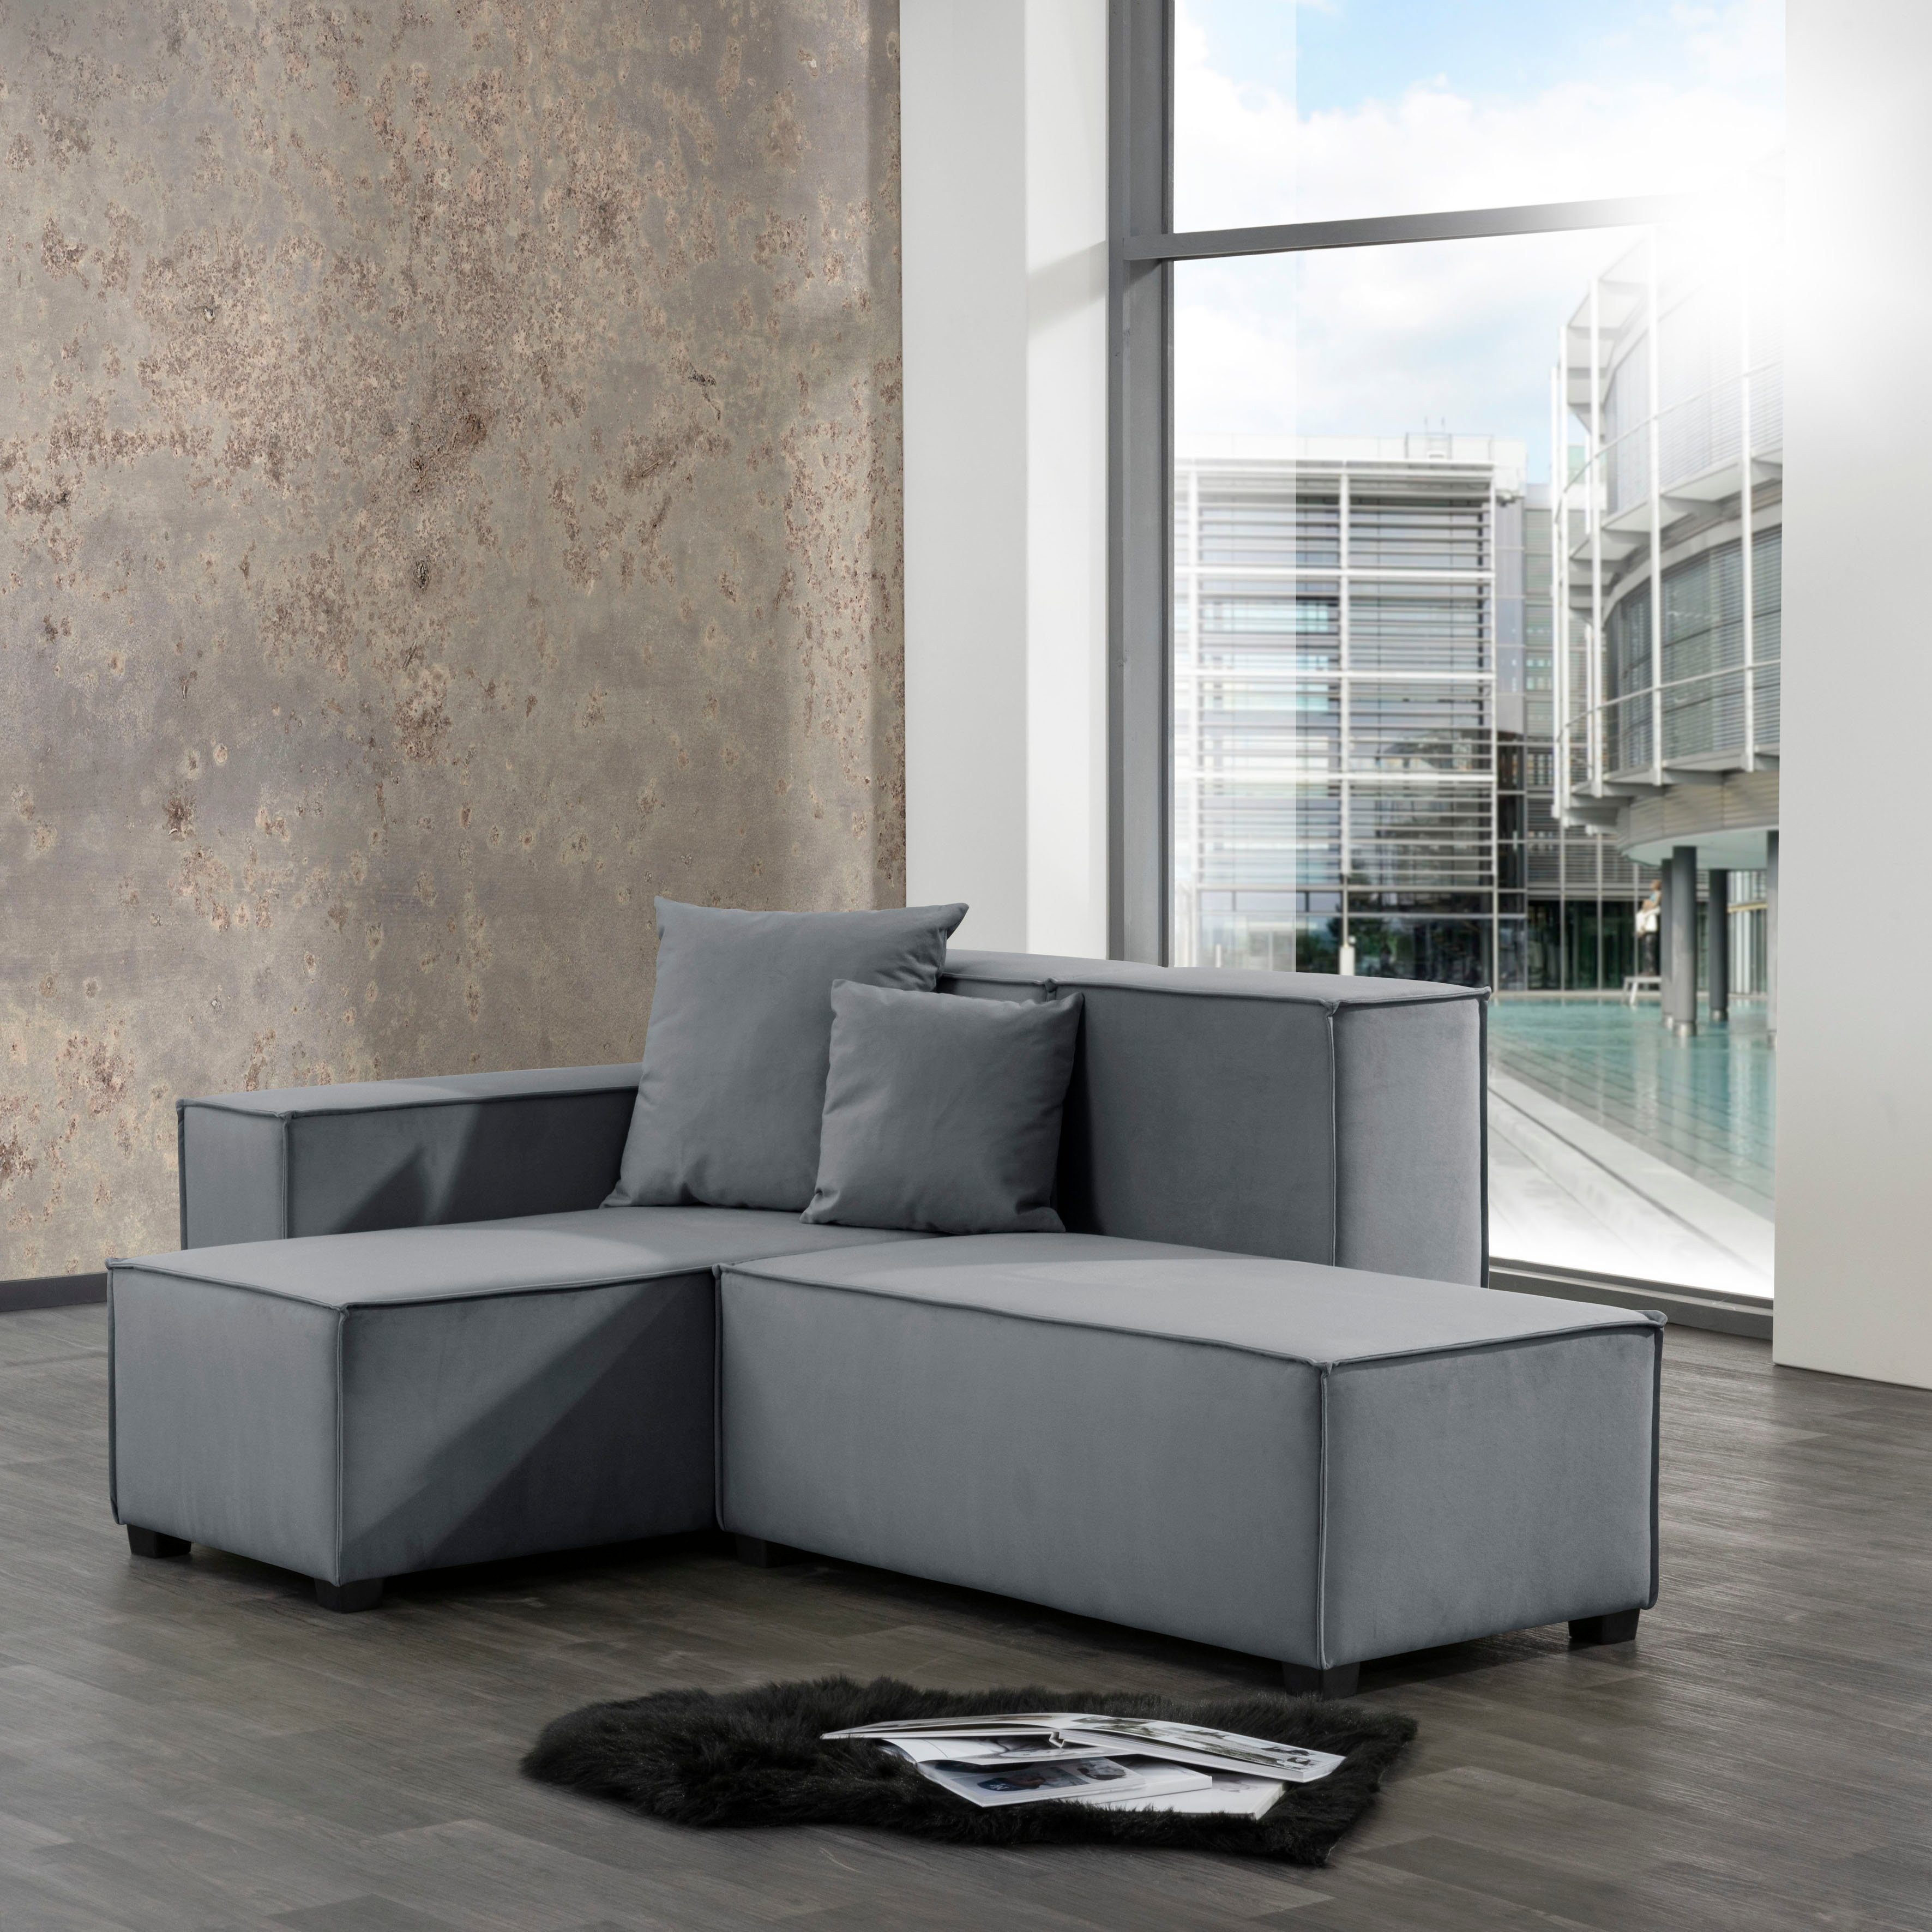 Max Winzer® Wohnlandschaft MOVE, Set, Sofa-Set 07 aus 5 Sitz-Elementen, inklusive 2 Zierkissen, kombinierbar grau